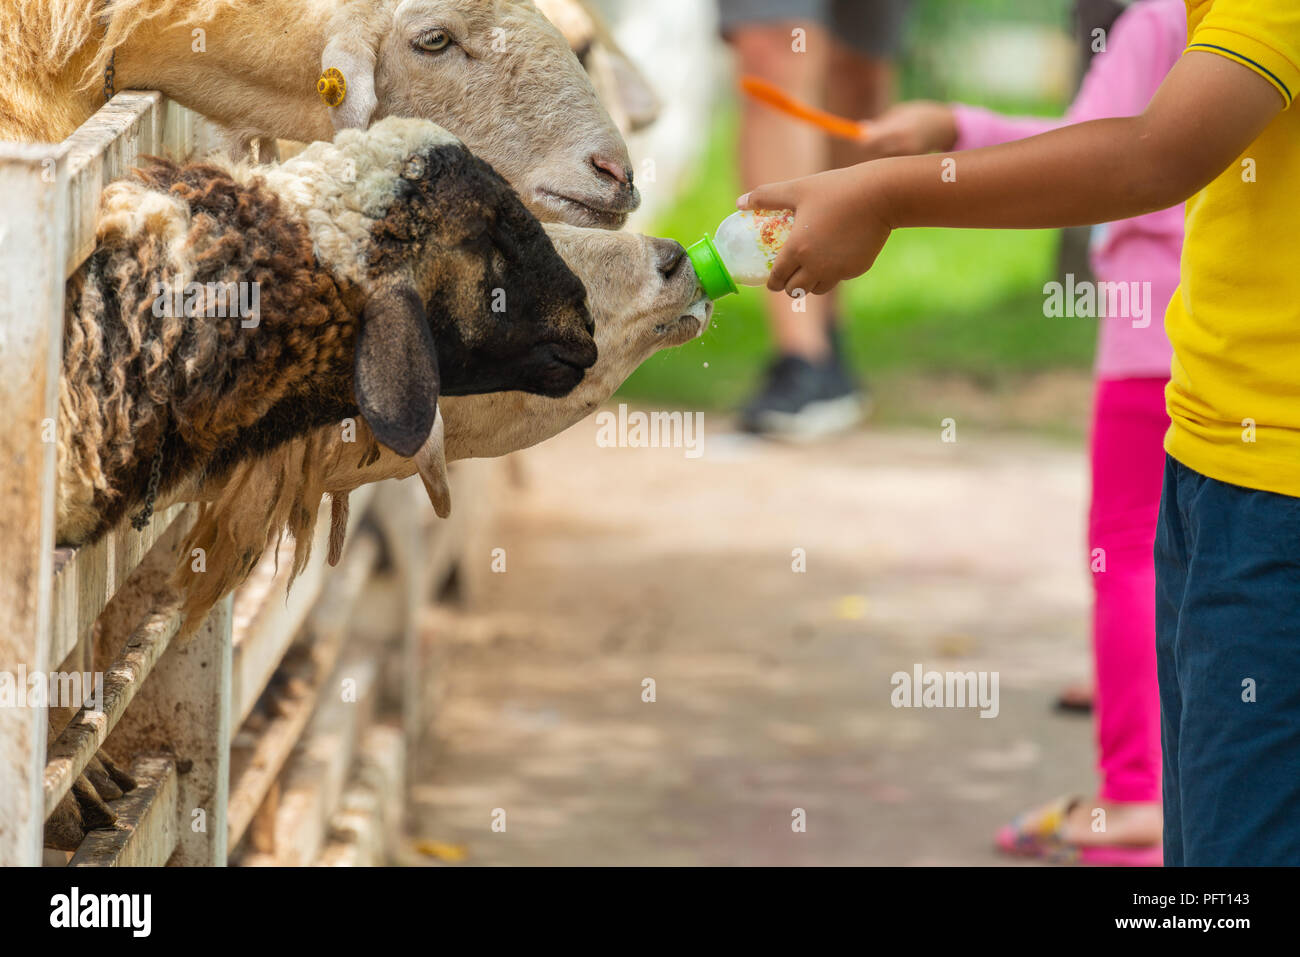 Un-identified tourist people feeding milk to sheeps in the farm in Nakhon Nayok, Thailand Stock Photo